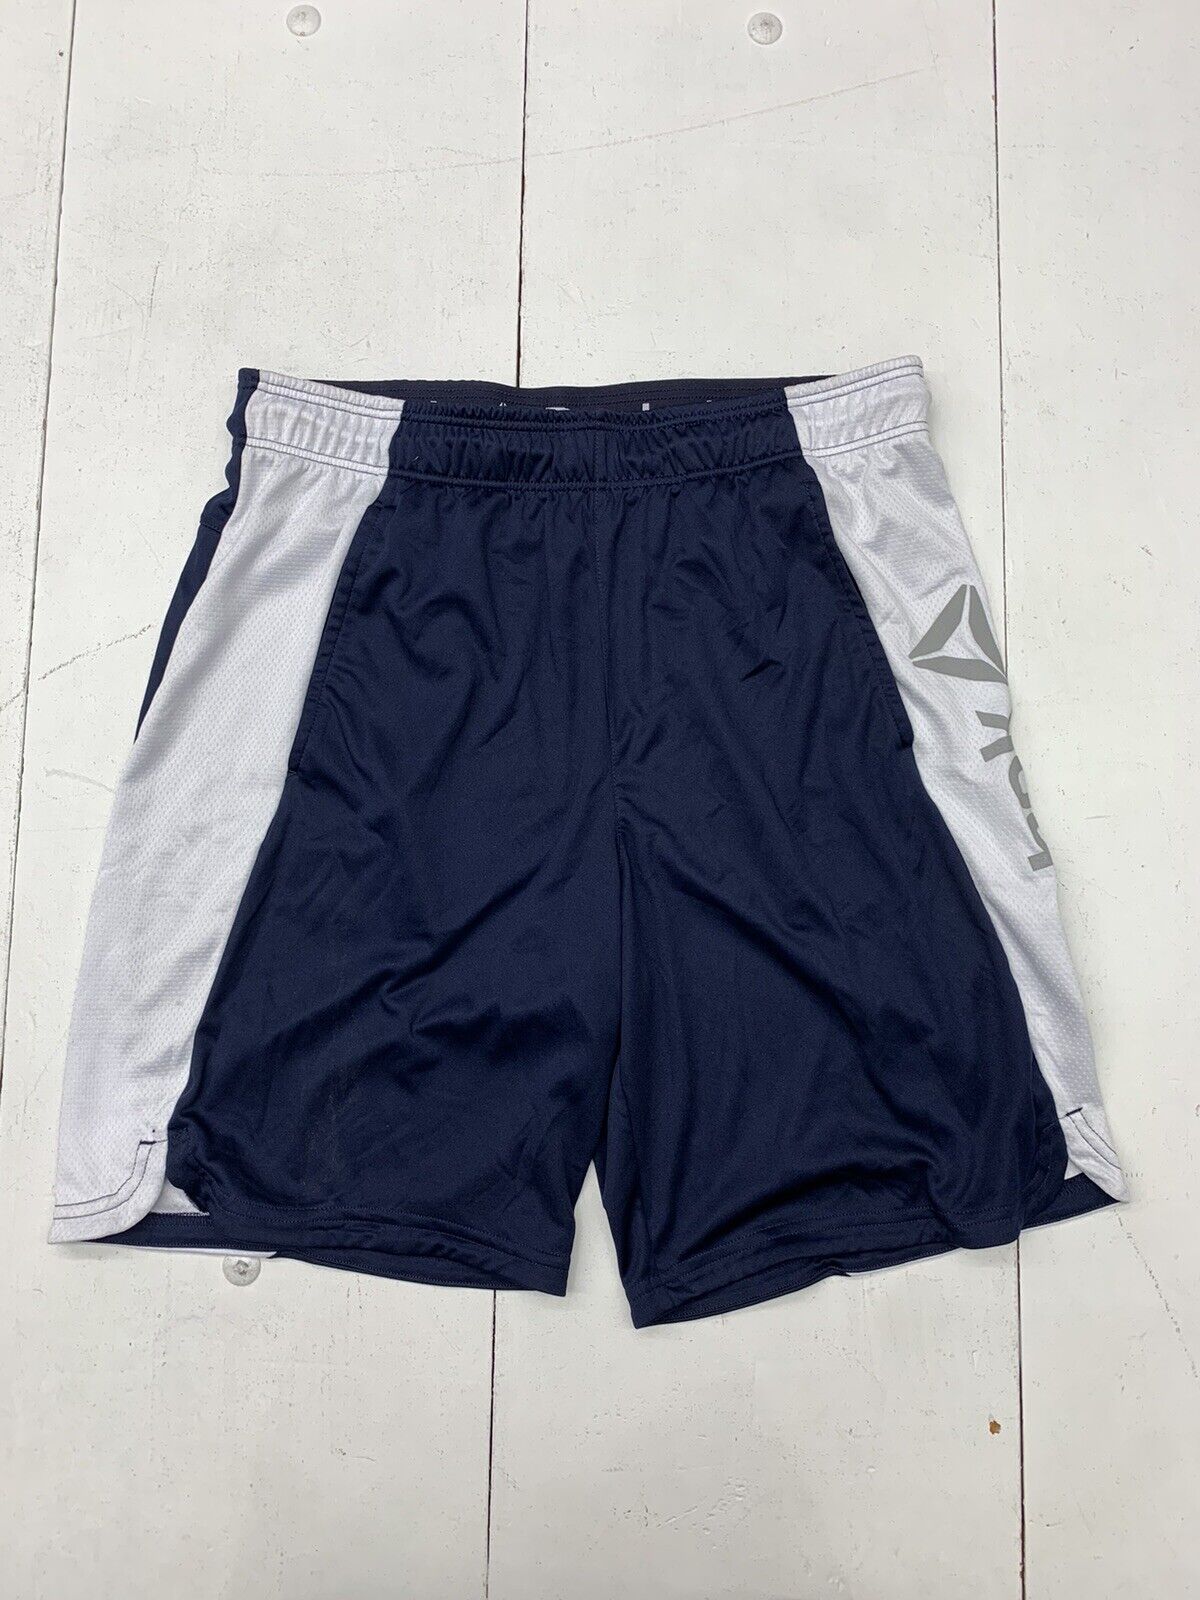 Reebok Mens Dark Blue Shorts Athletic Large - beyond Size exchange